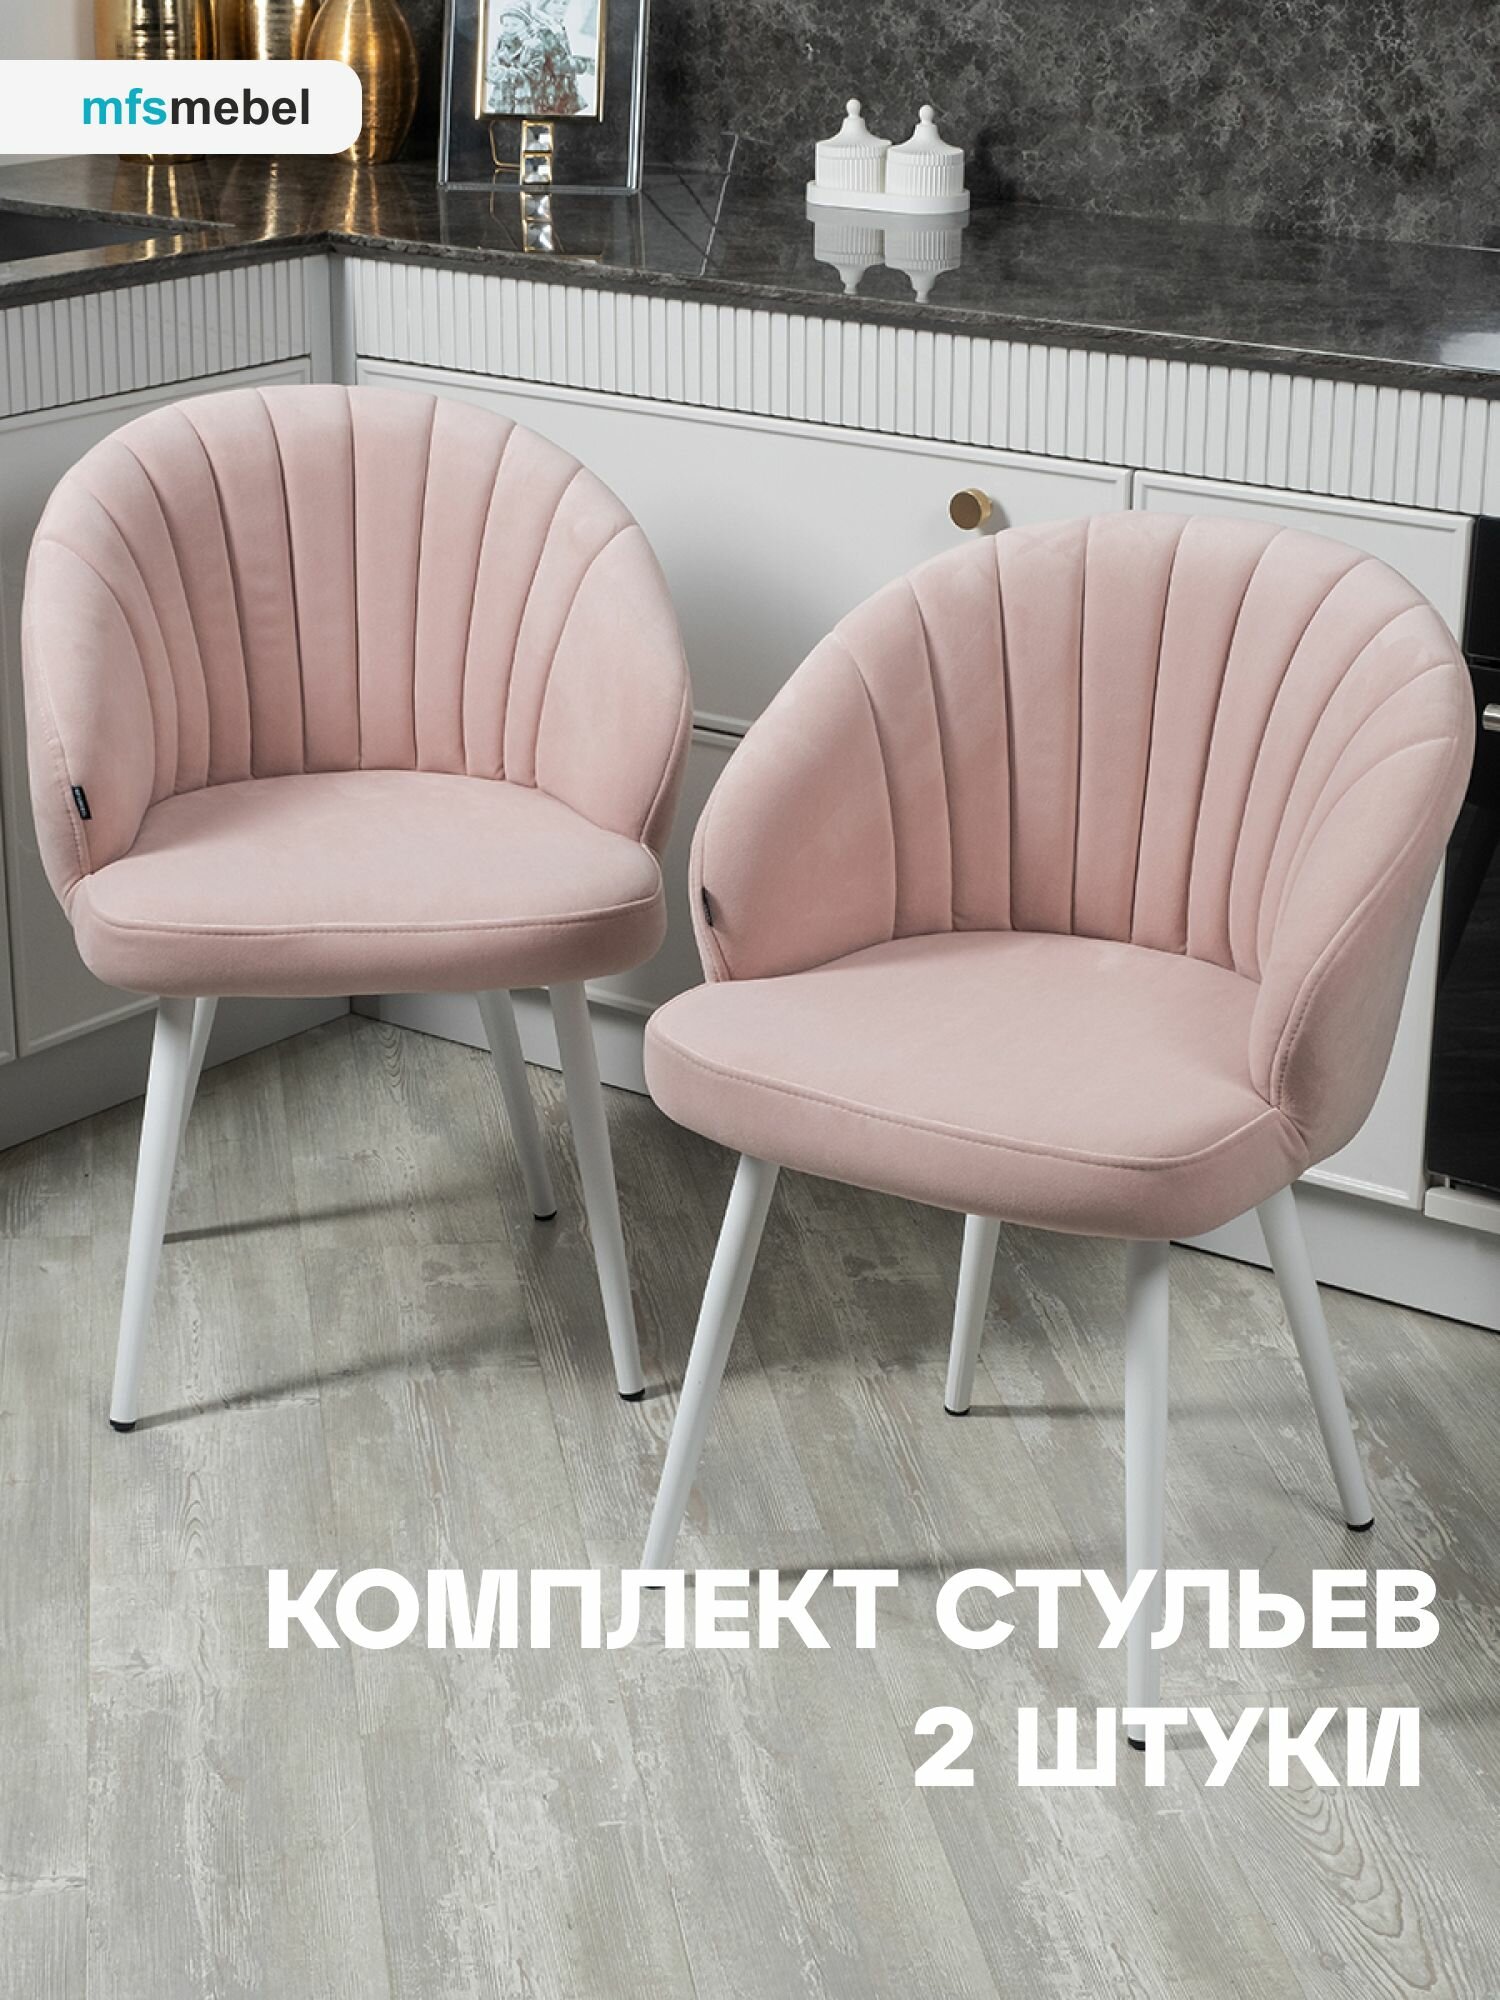 Комплект стульев "Зефир" для кухни светло-розовый /ноги белые, стулья кухонные 2 штуки